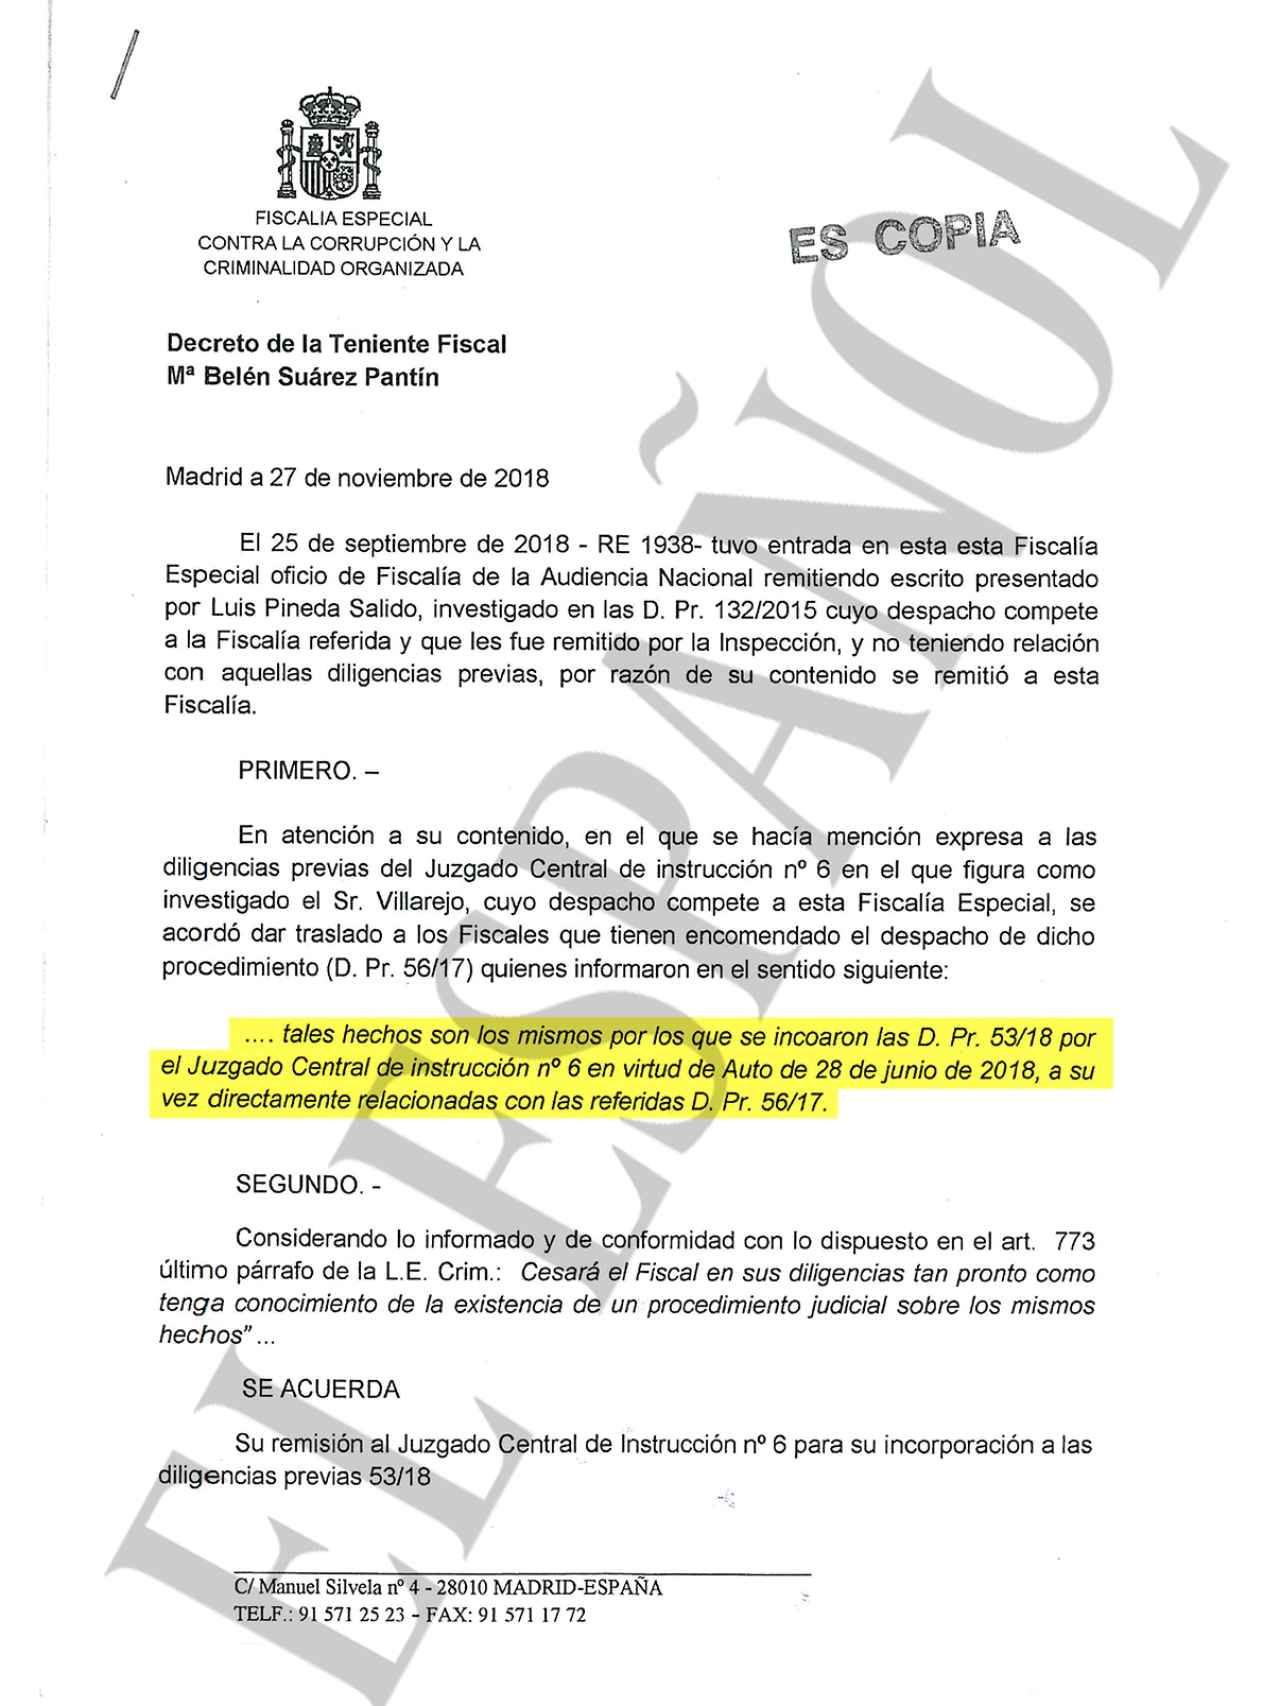 Documento de la Fiscalía Anticorrupción sobre la existencia de la pieza que investiga al BBVA.